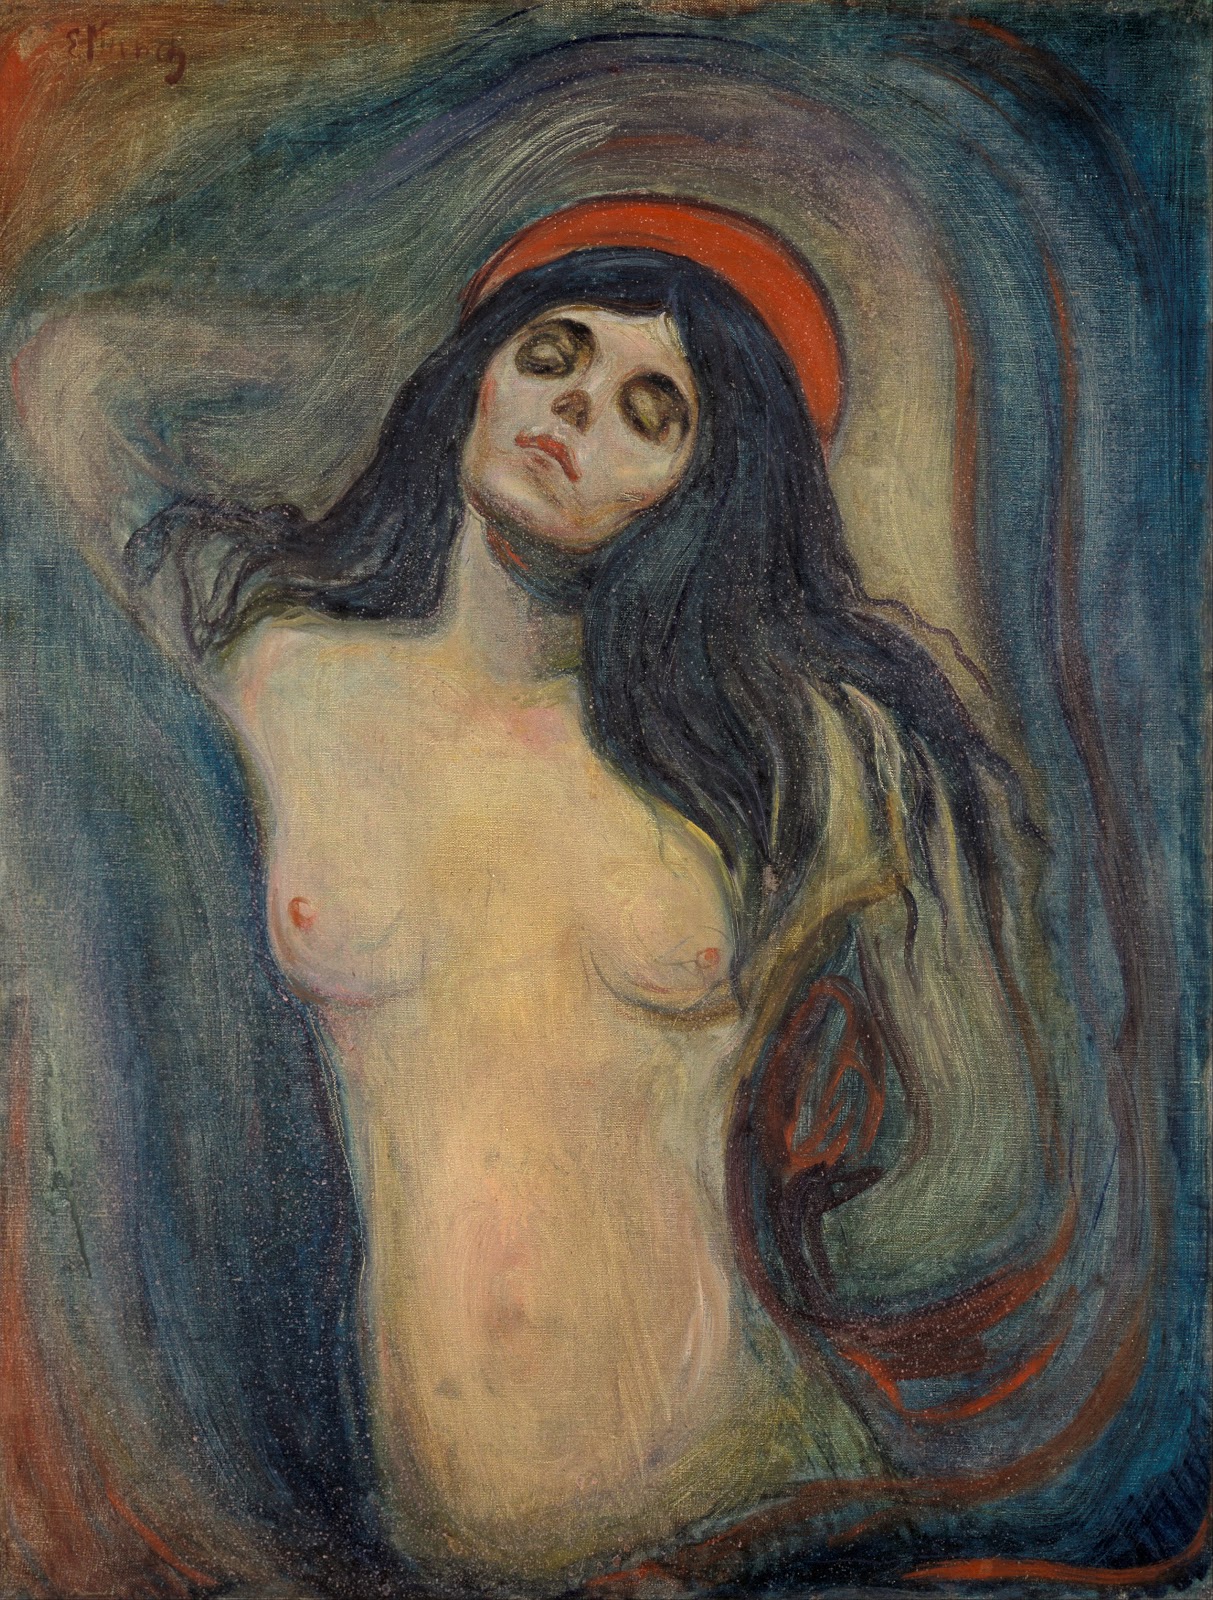 Edvard+Munch-1863-1944 (31).jpg